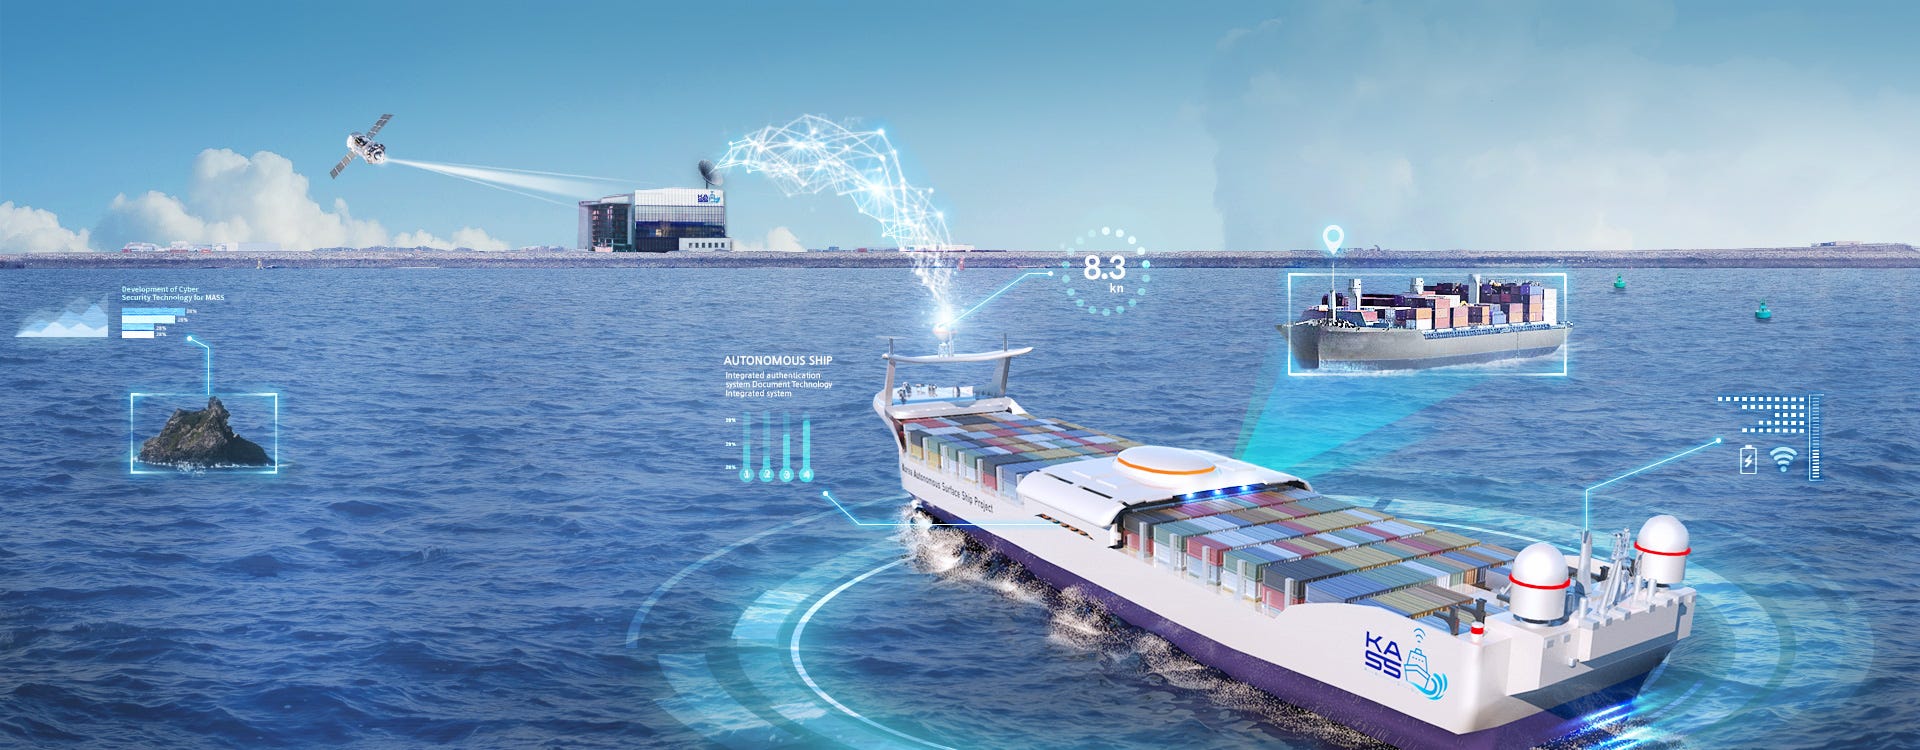 Autonomous Ships Market Set to Reach $11 Billion by 2030